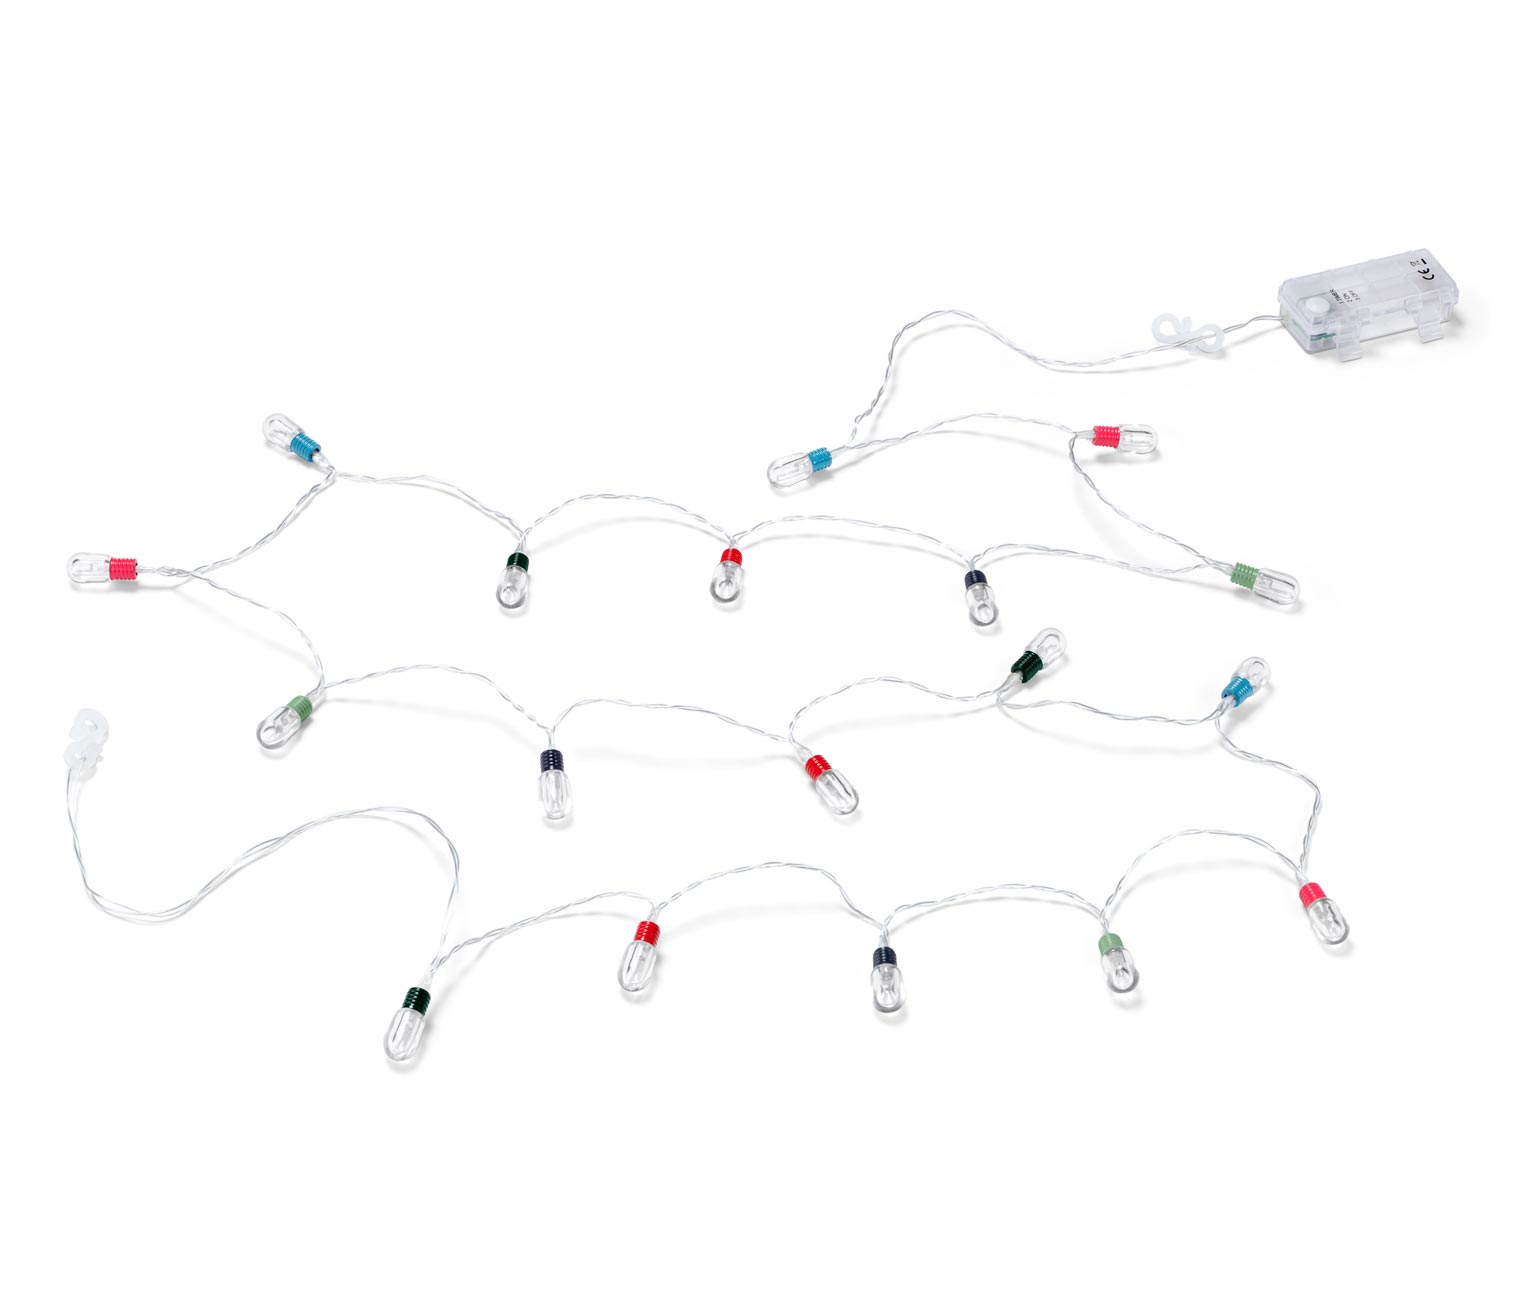 LED-Lichterkette mit Mini-Glühbirnen, bunt online bestellen bei Tchibo  632109